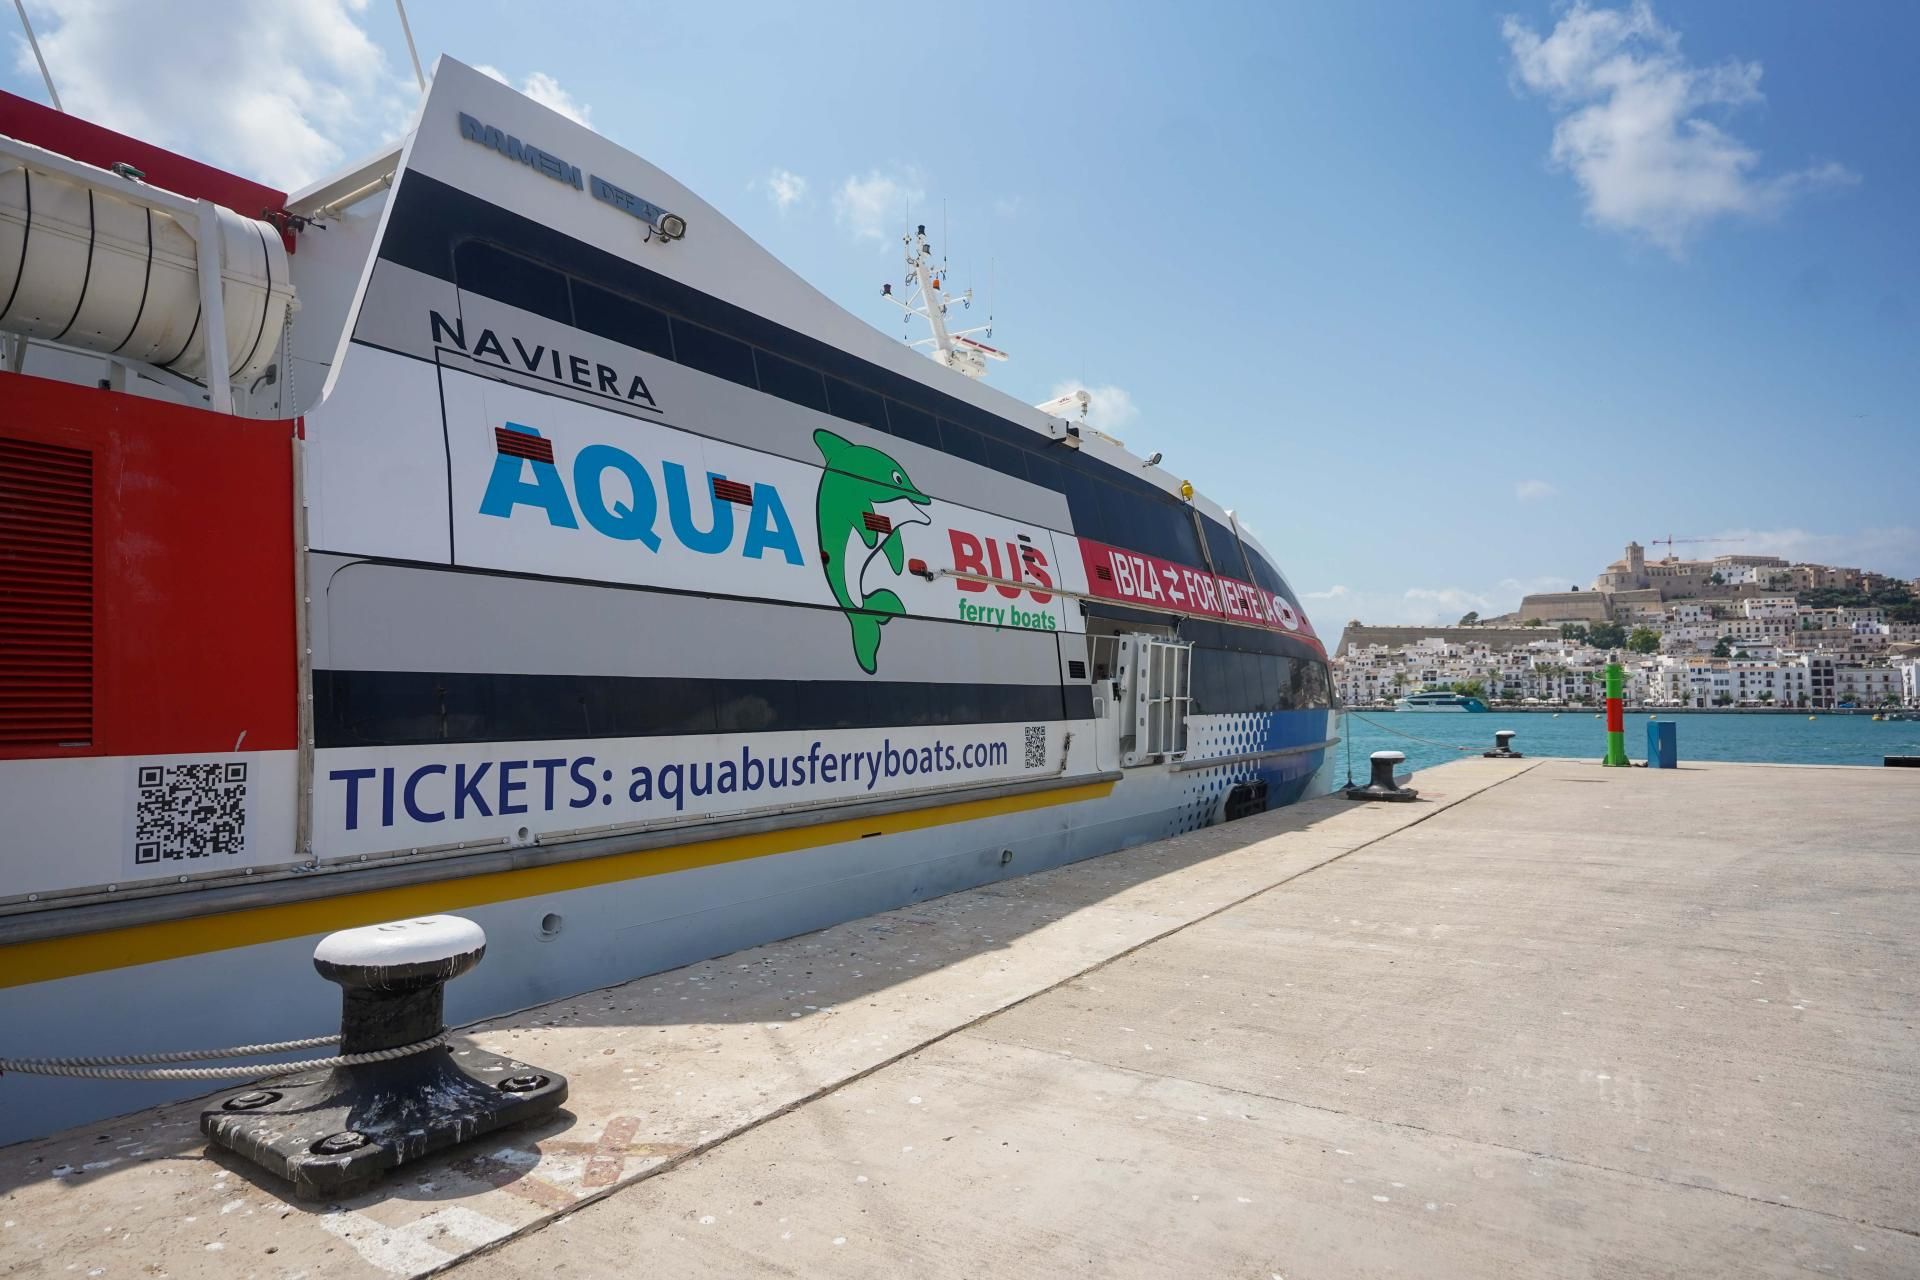 PERIODICODEIBIZA: Aquabus Jet revolutioniert seine Flotte mit zwei neuen hochmodernen Schiffen